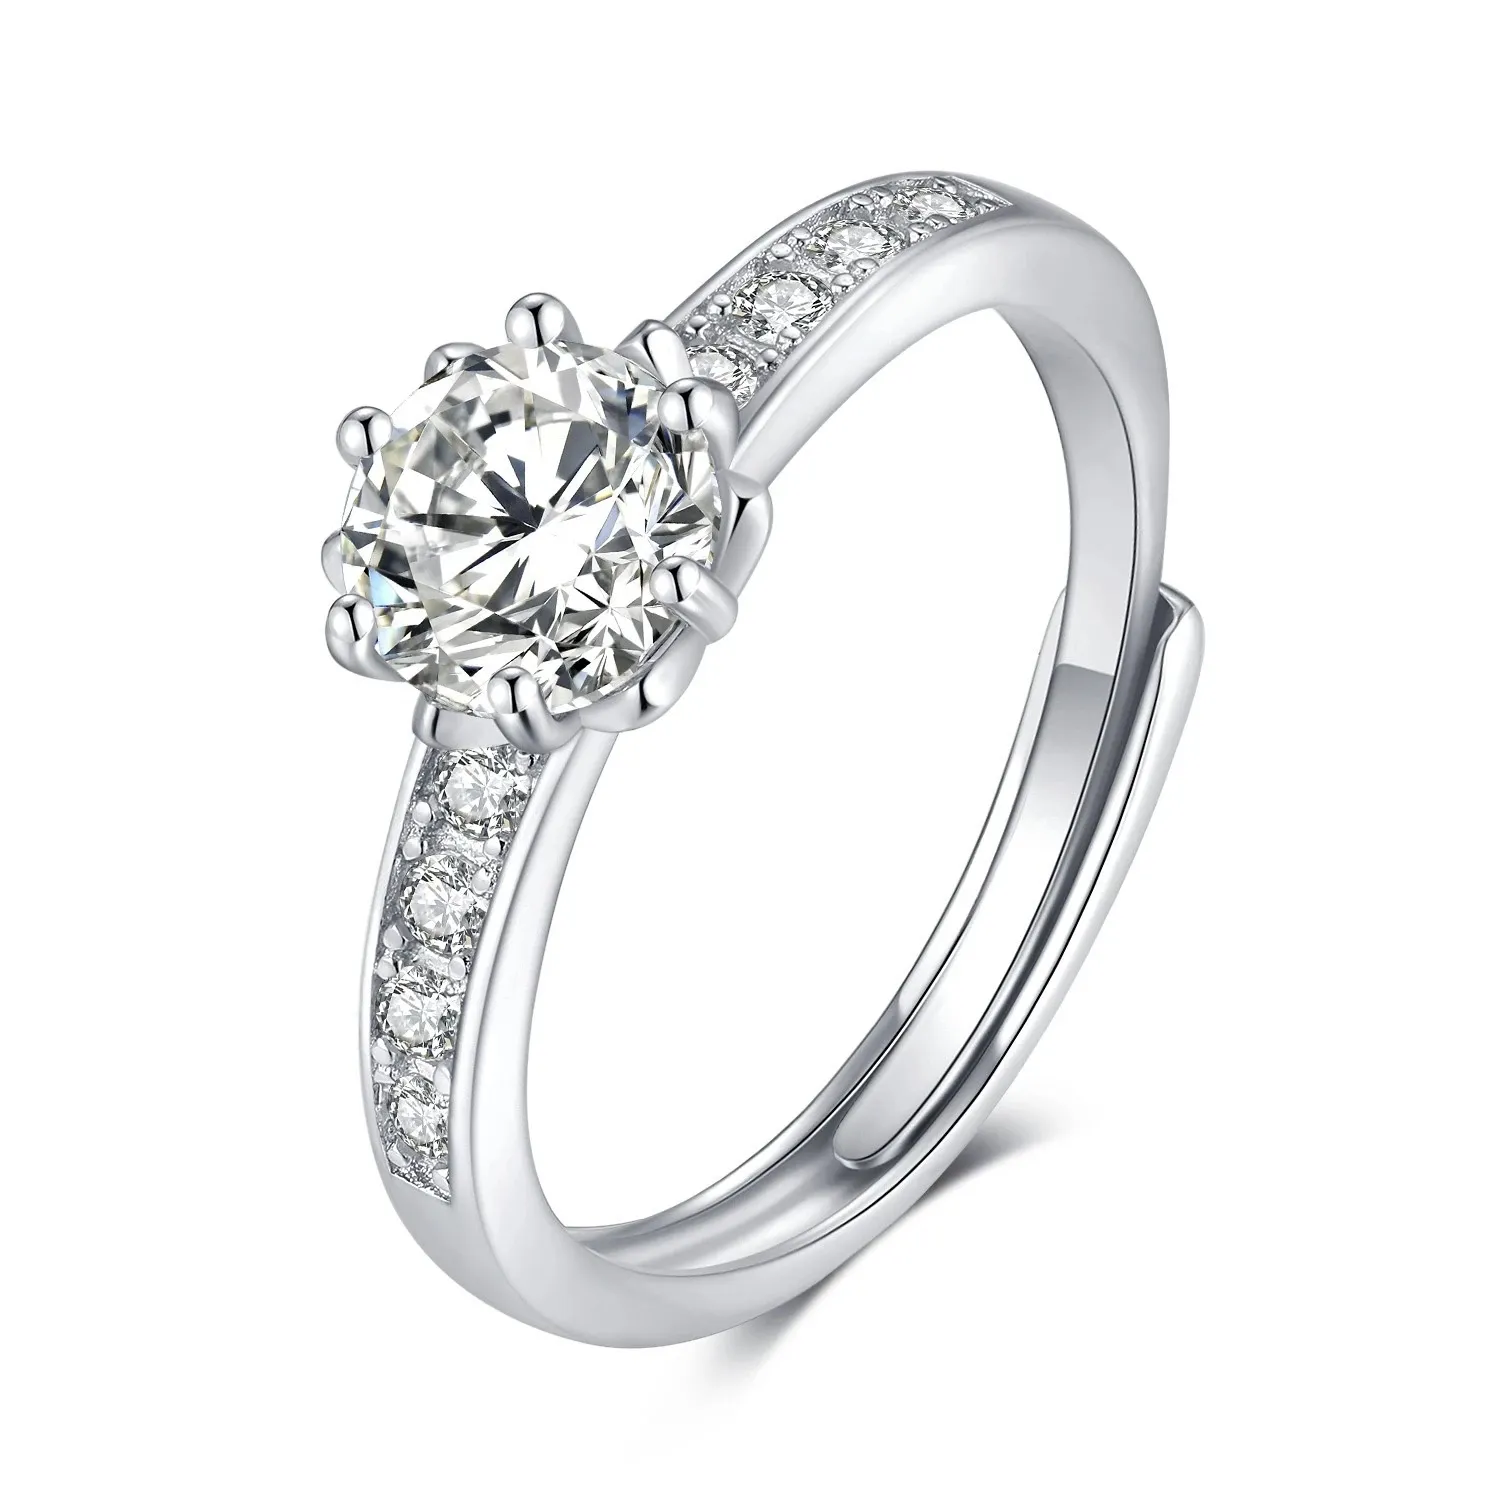 Корейская версия The Fashion Versatile S925, серебряное кольцо с платиновым покрытием, имитация муассана, блестящий цветок, микронабор, мульти-бриллианты2600